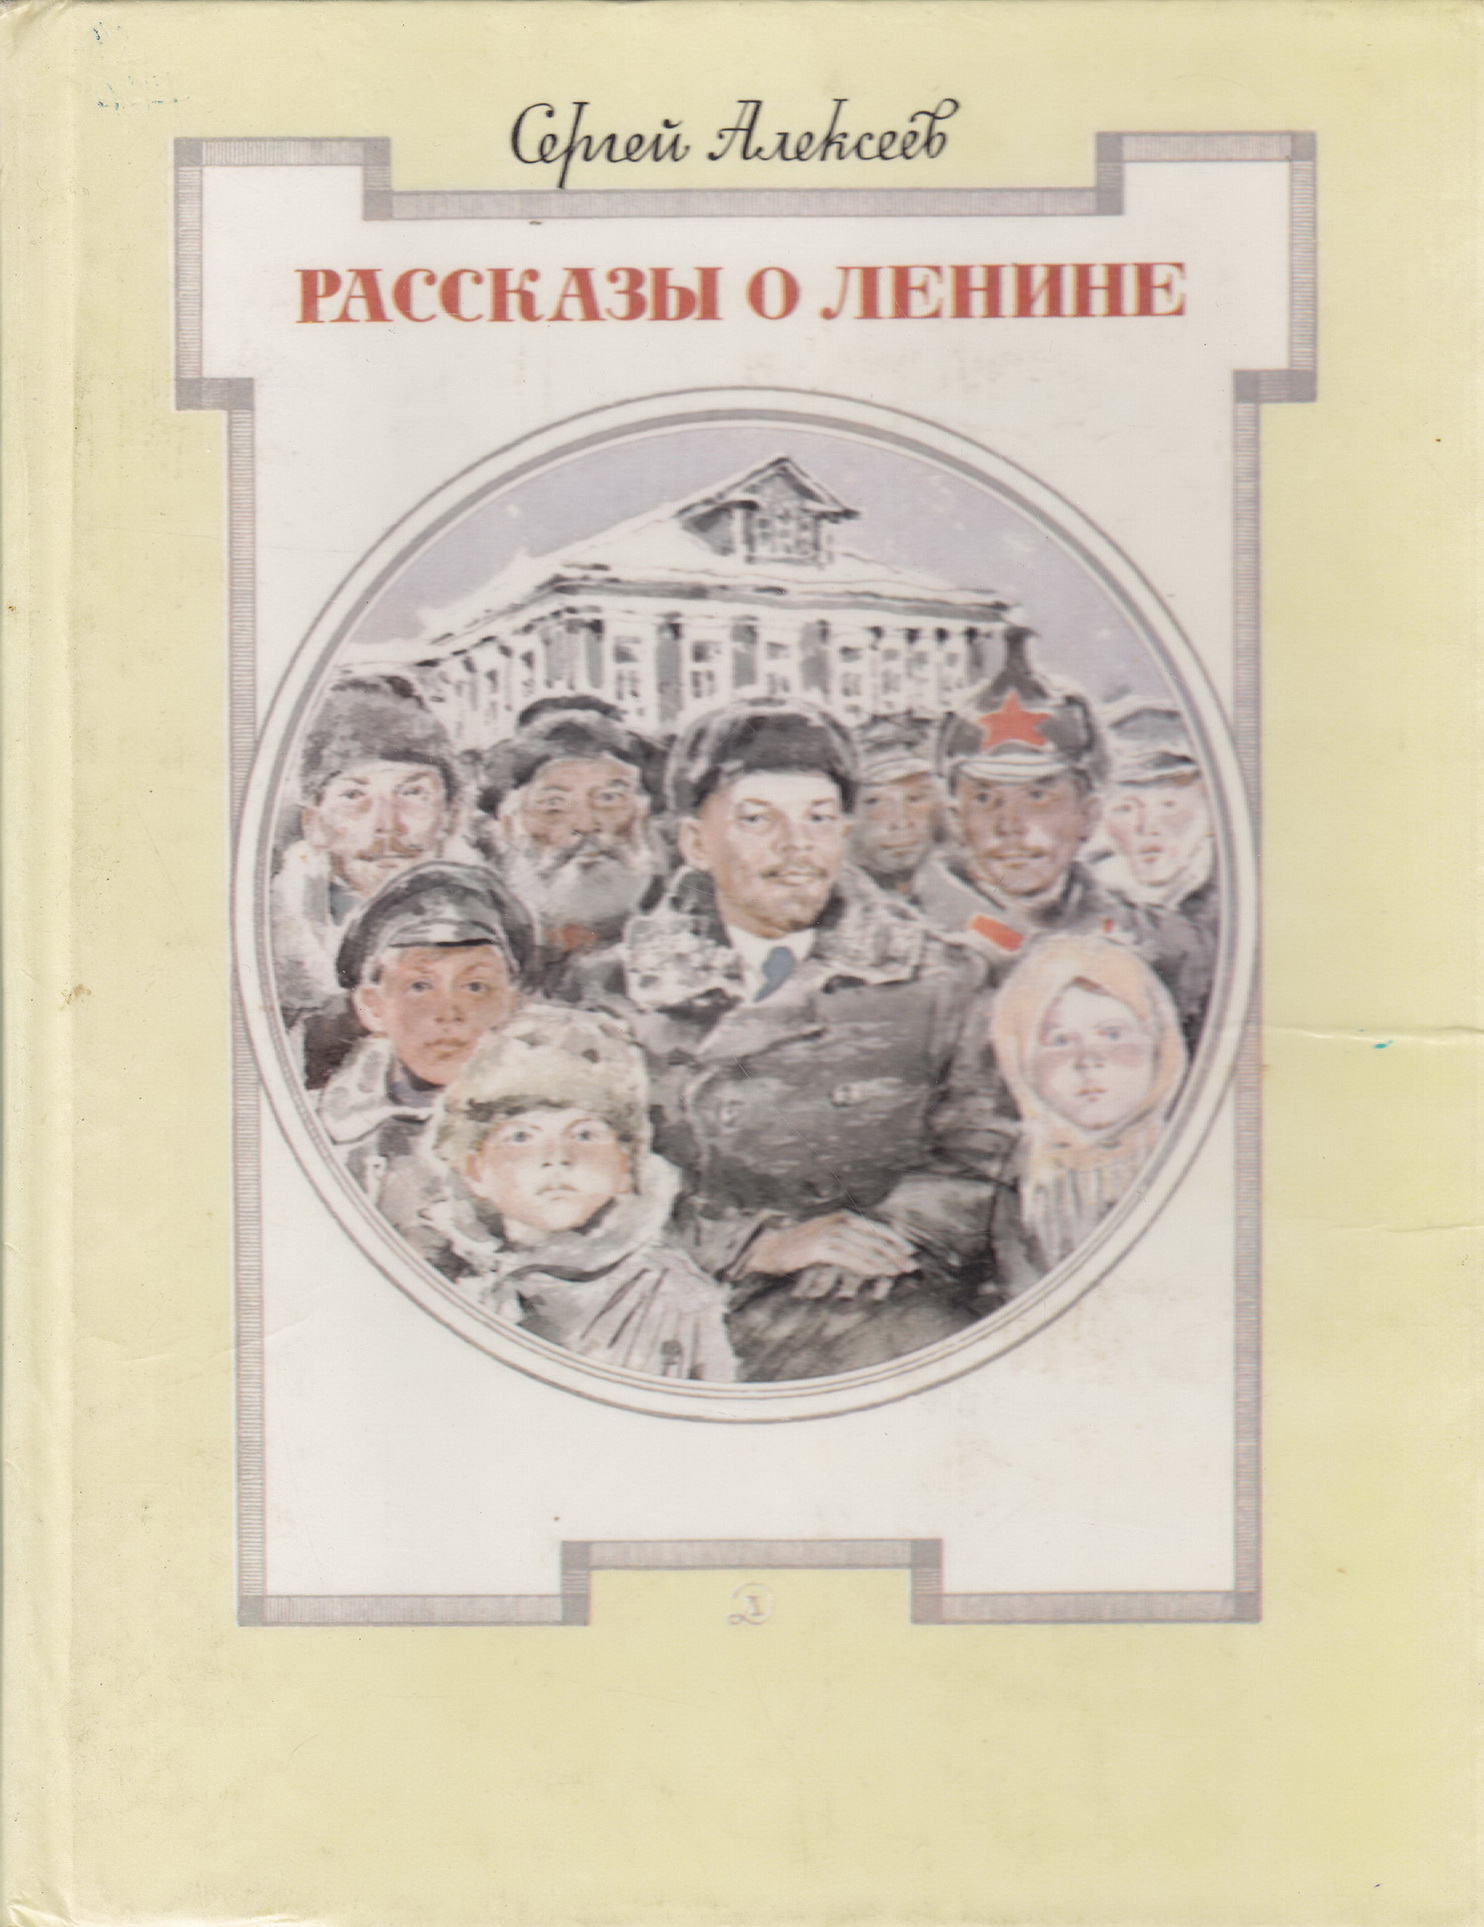 Нажмите для увеличения. Алексеев С. П. Рассказы о Ленине (Фото книги из фонда библиотеки) 